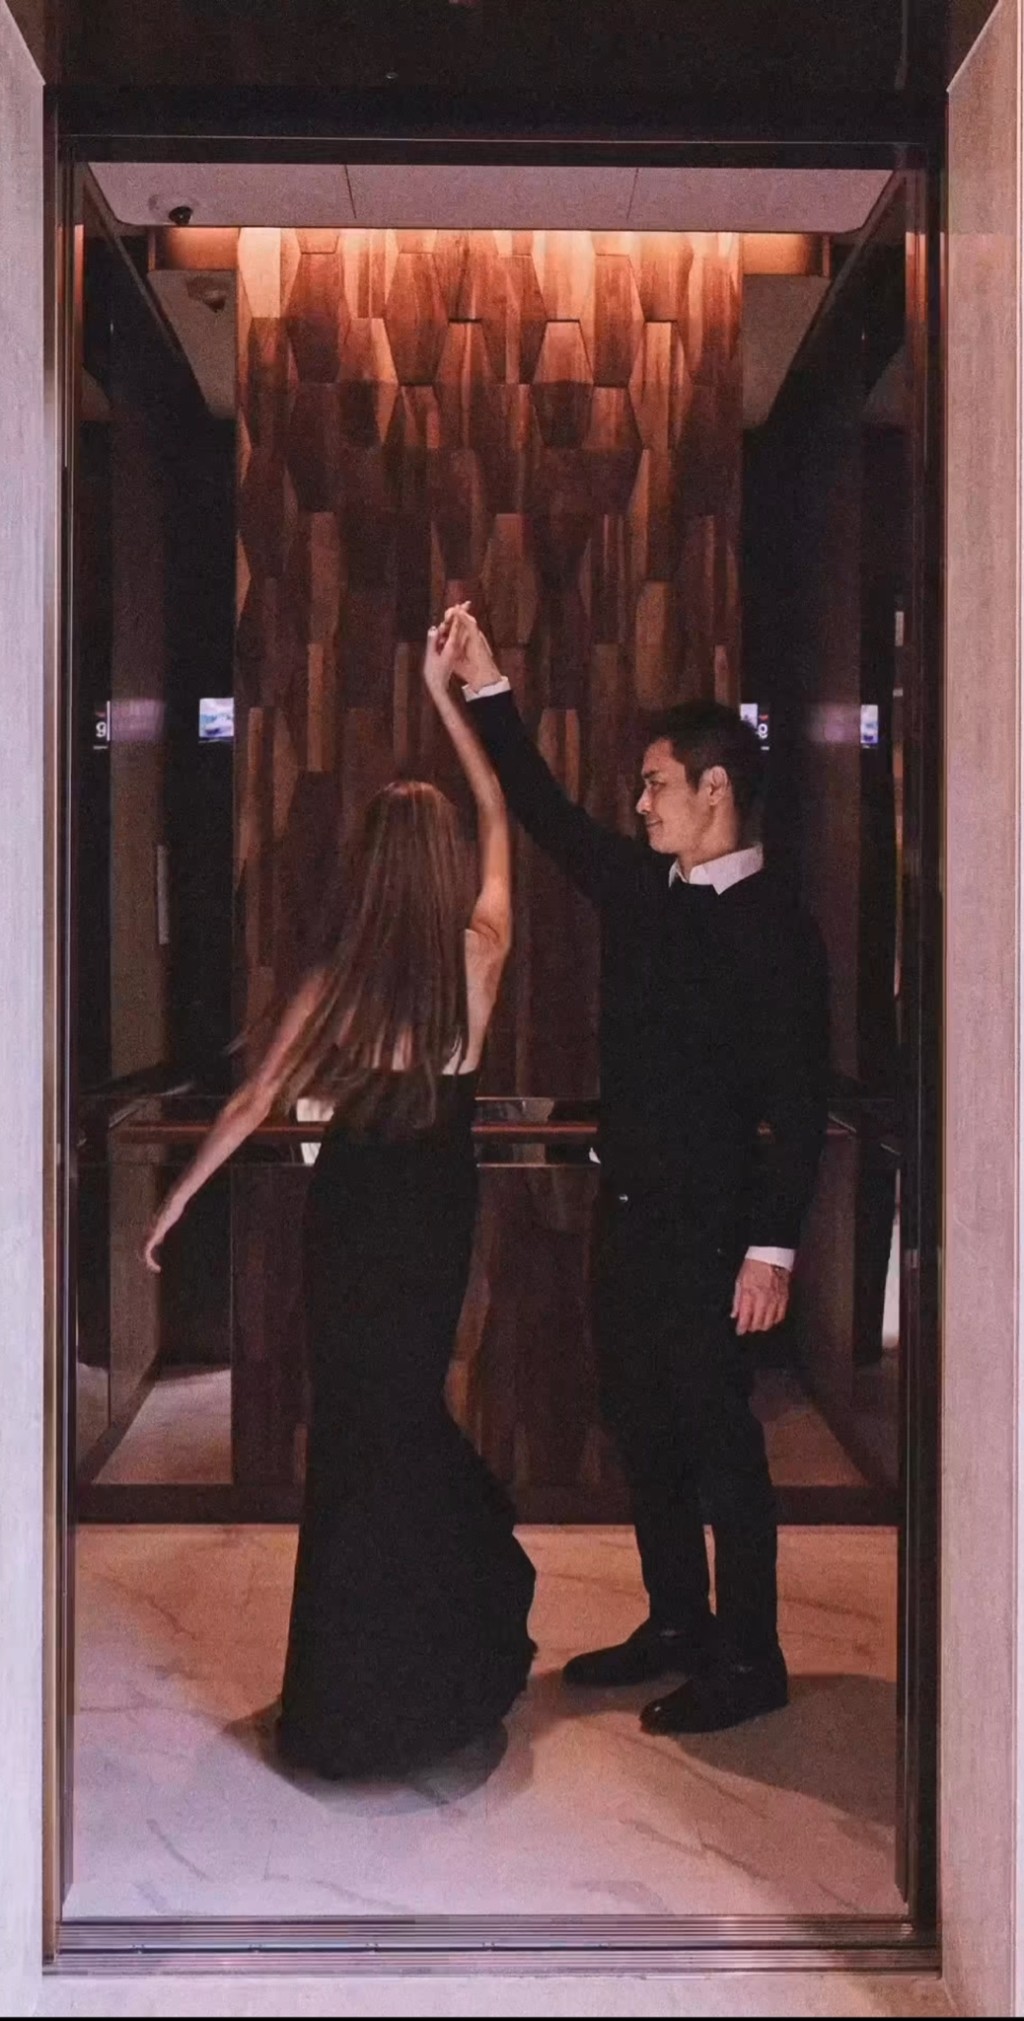 內容是二人在電梯中如跳舞般。